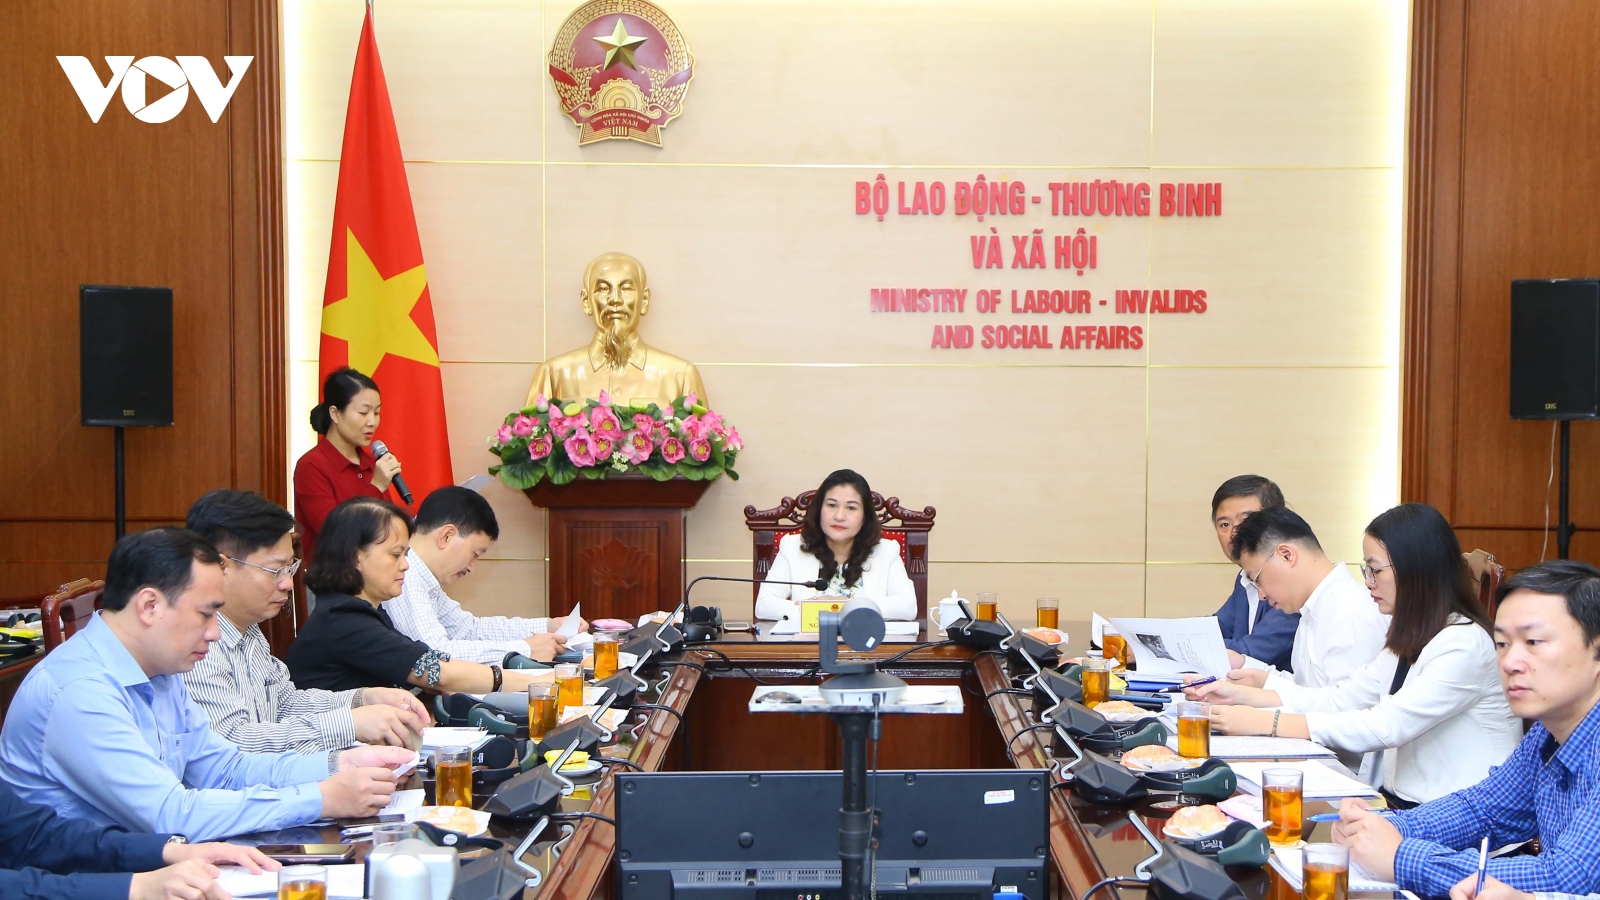 Hợp tác quốc tế mở ra nhiều cơ hội việc làm cho lao động Việt Nam